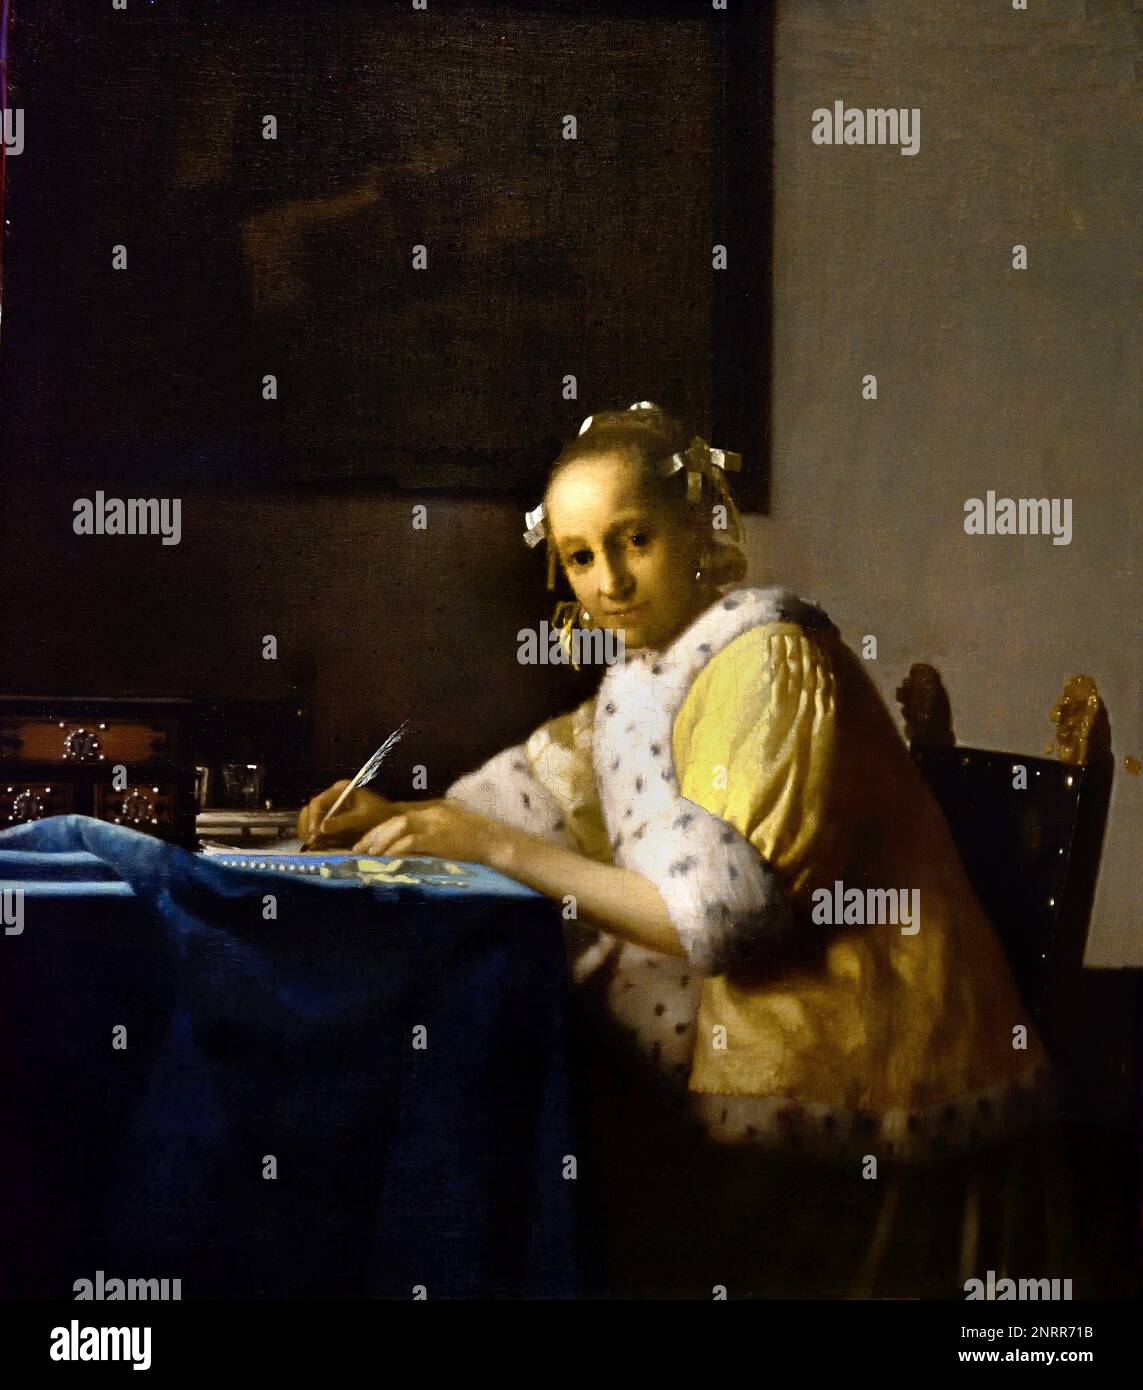 A Lady writing 1664-1667 von Johannes Vermeer oder Jan Vermeer 1632 - 1675, Delft, Niederlande, Holländisch, Holland, (Holländischer Maler im Goldenen Zeitalter, einer der größten Maler des 17. Jahrhunderts. Bevorzugte zeitlose, gedämpfte Momente, bleibt rätselhaft, unnachahmliches Farbschema und verwirrender Lichtinhalt) Stockfoto